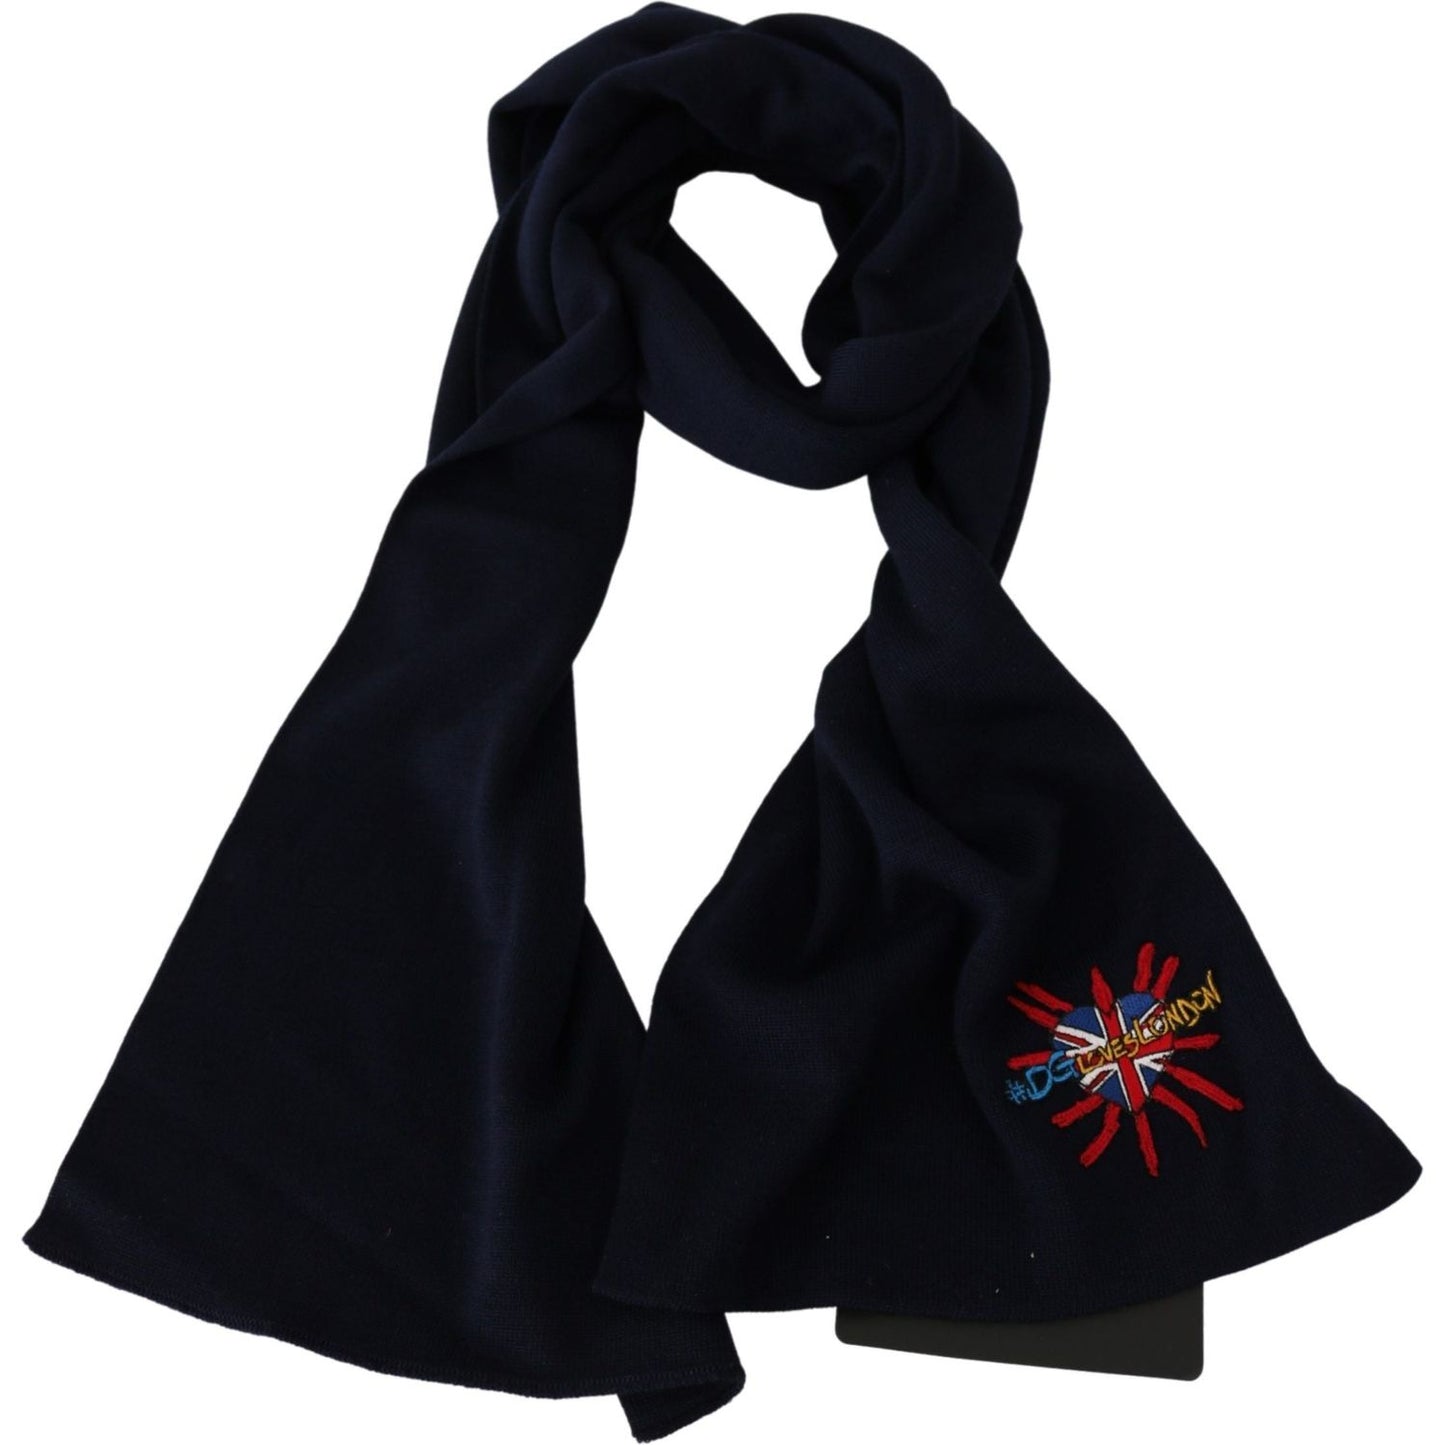 Dolce & Gabbana Elegant Virgin Wool Men's Scarf Wool Wrap Shawls blue-dgloveslondon-wrap-shawl-wool-scarf IMG_1163-scaled-1e1dbb86-8f8.jpg